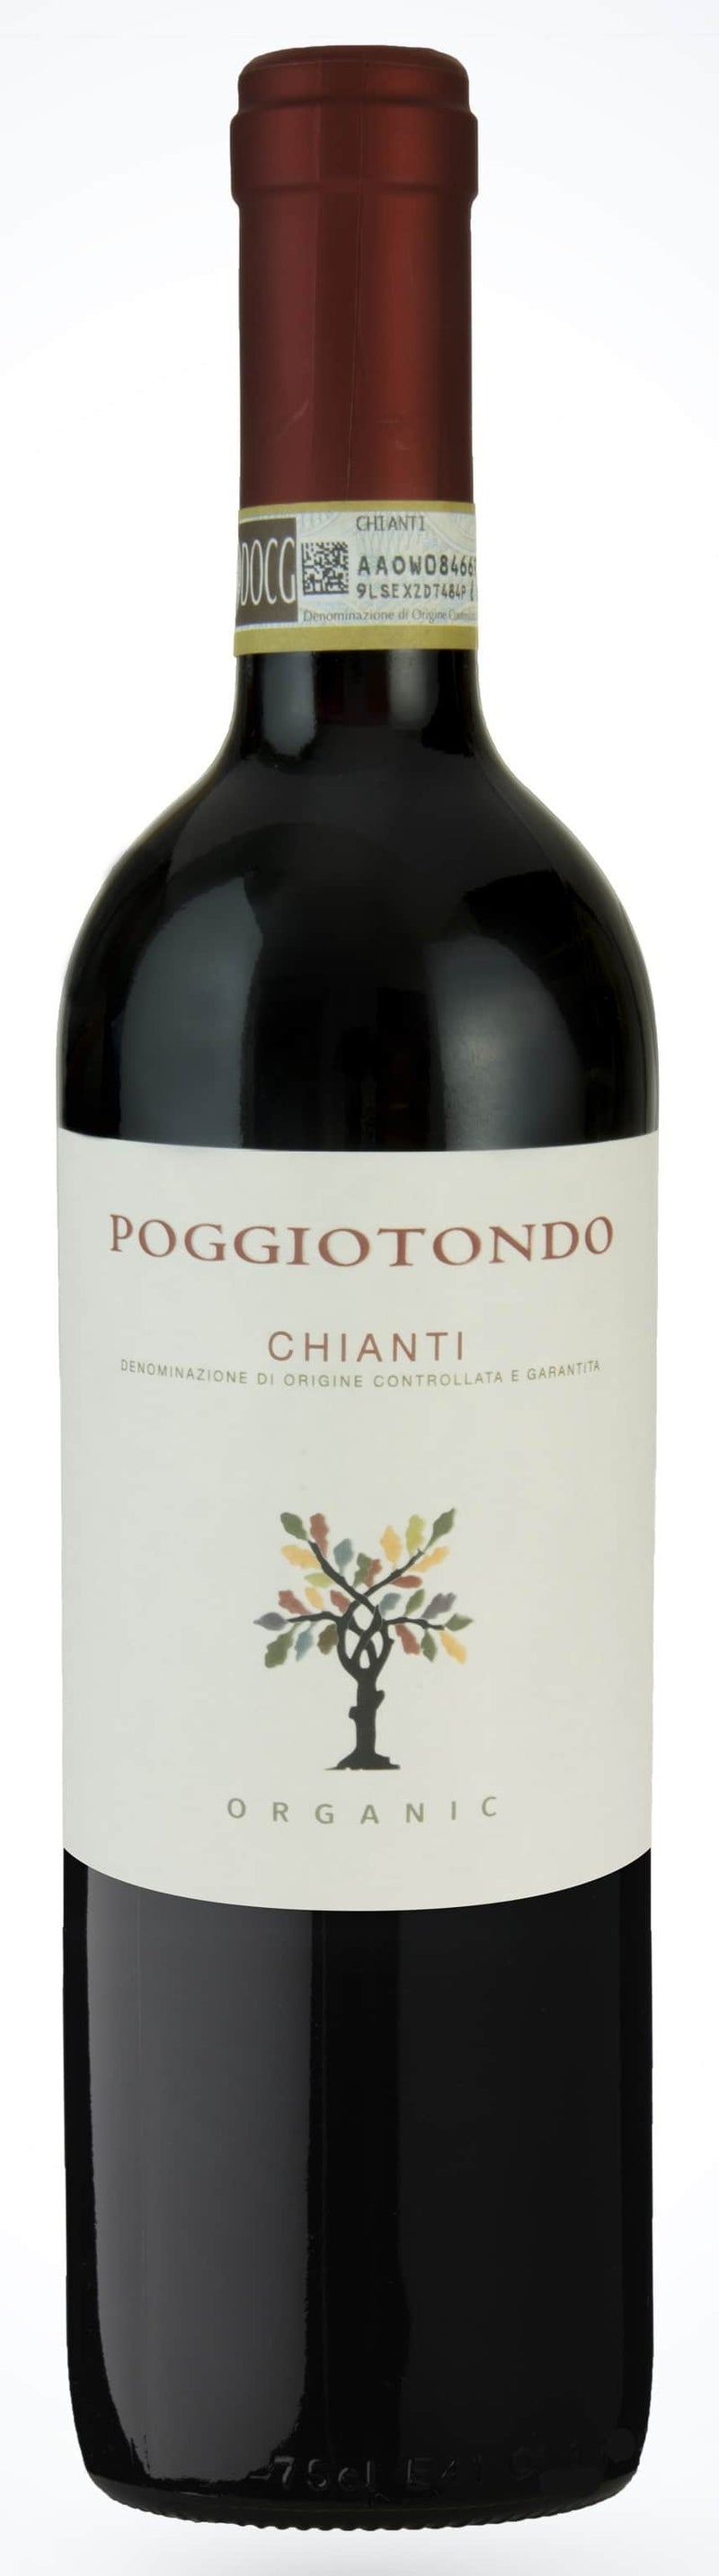 2014 Organic Chianti, Poggiotondo, Tuscany, Italy